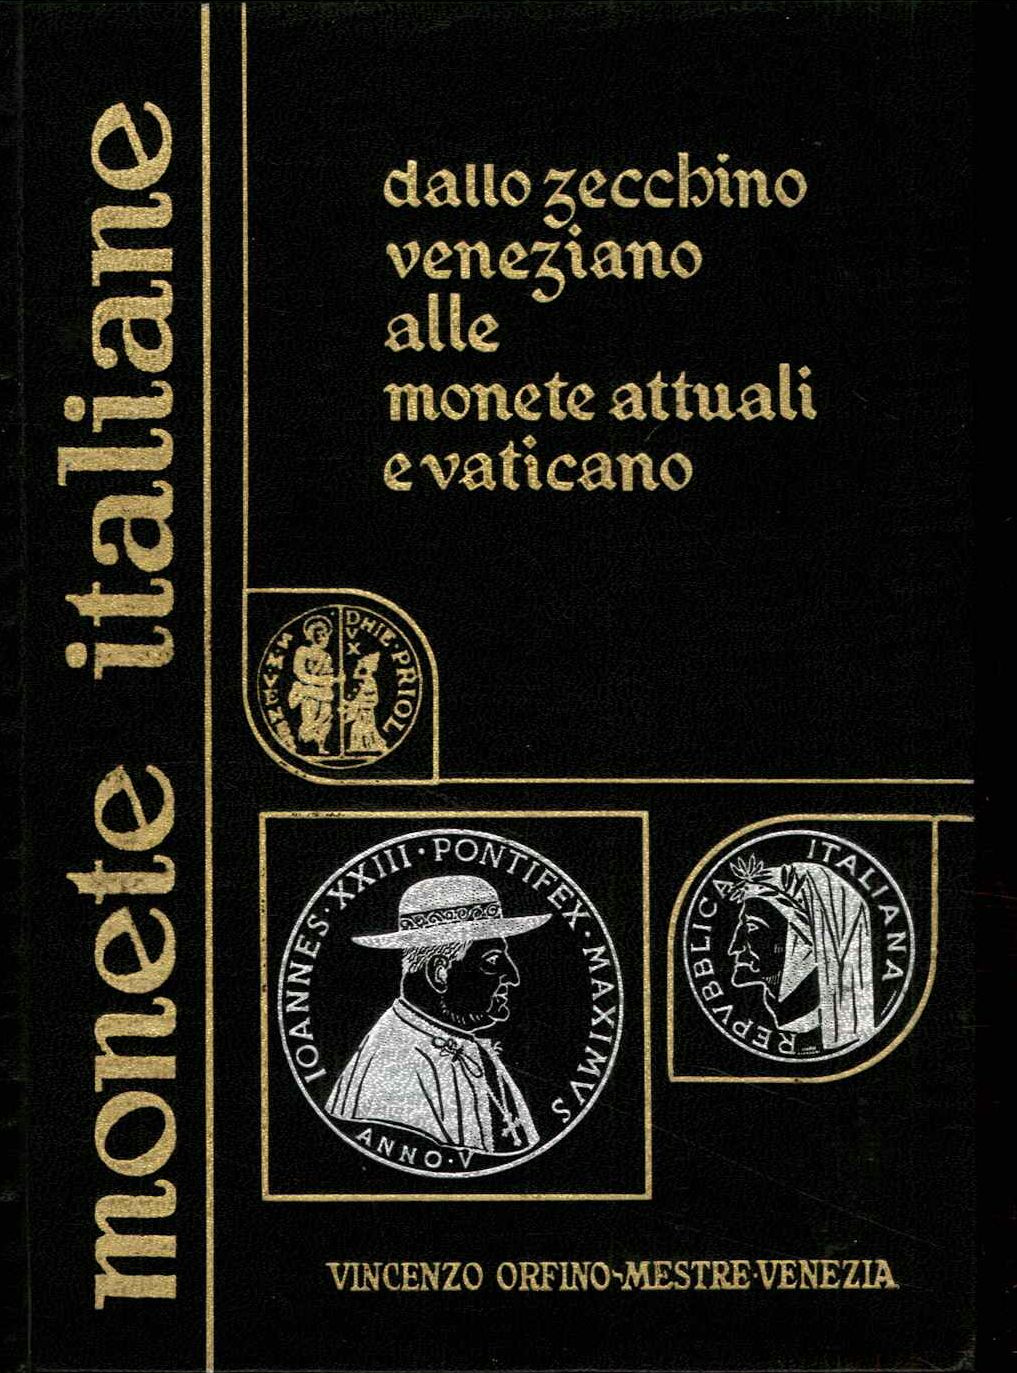 Monete italiane. Dallo zecchino veneziano alle monete attuali e vaticano. 1967